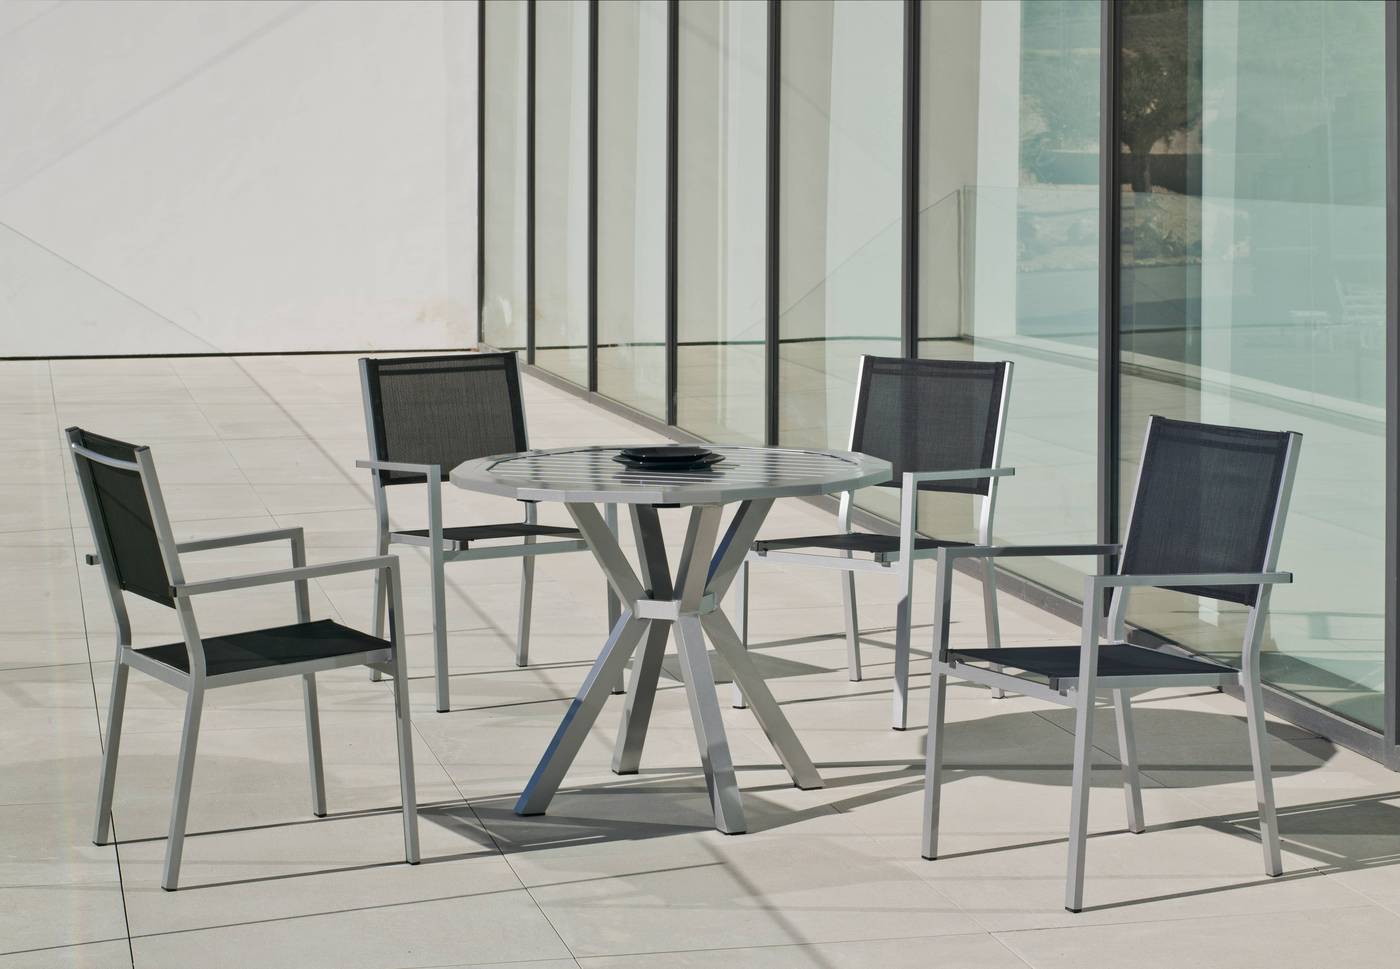 Sillón Aluminio Córcega - Sillón apilable de aluminio color blanco, antracita, champagne, plata o marrón, con asiento y respaldo de textilen